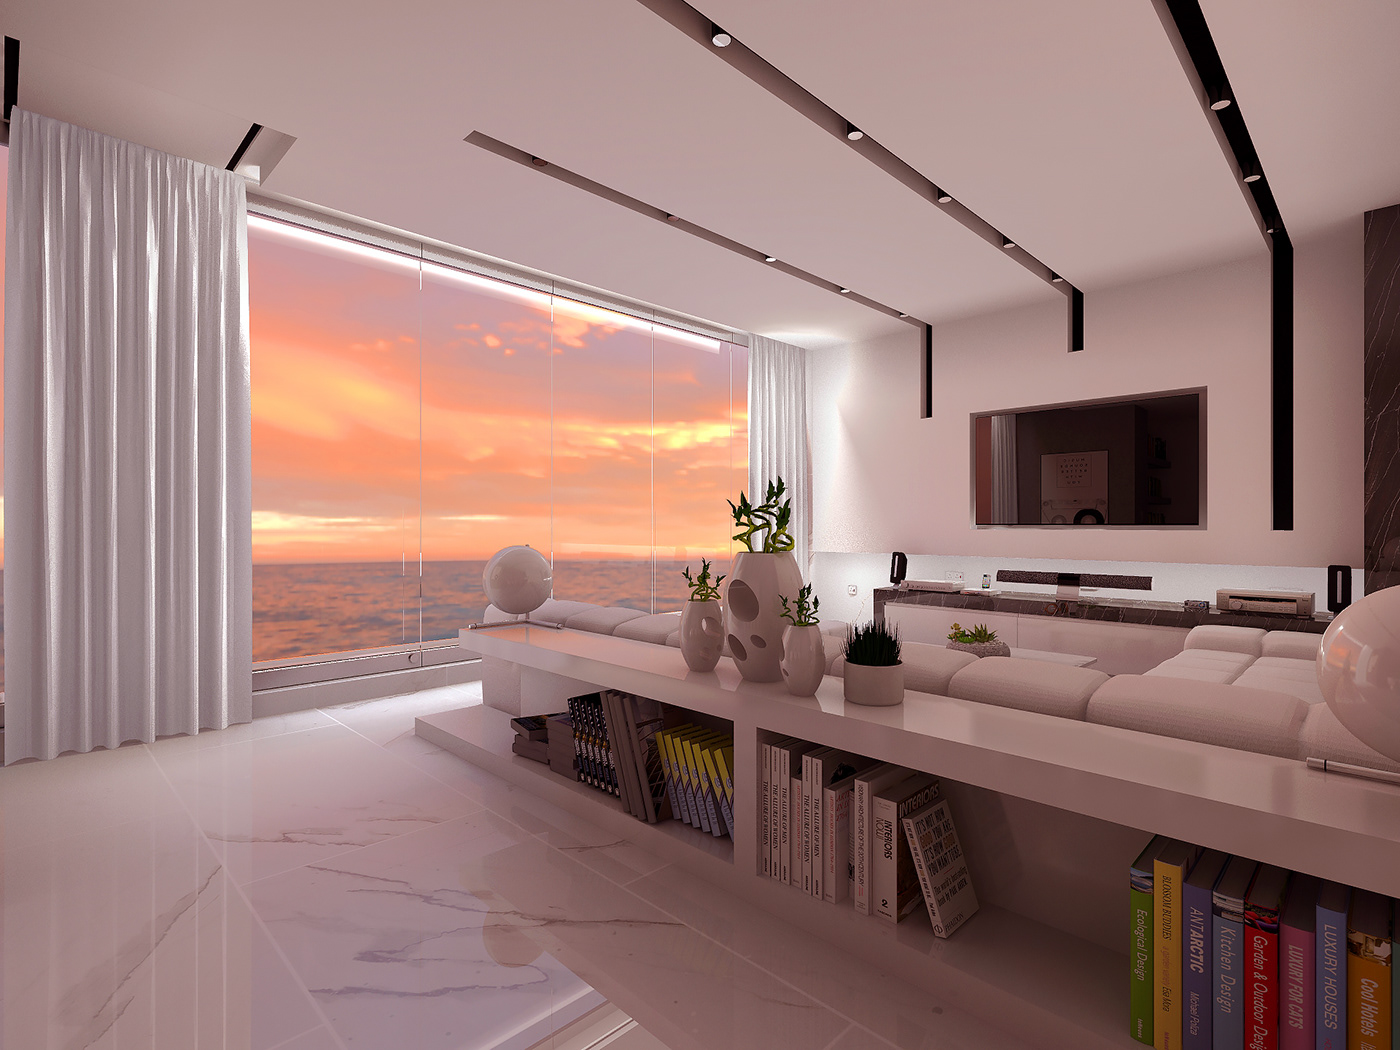 limassol apartment design minimaldesign interior design  architecture visualization 3D Render CGI concept design